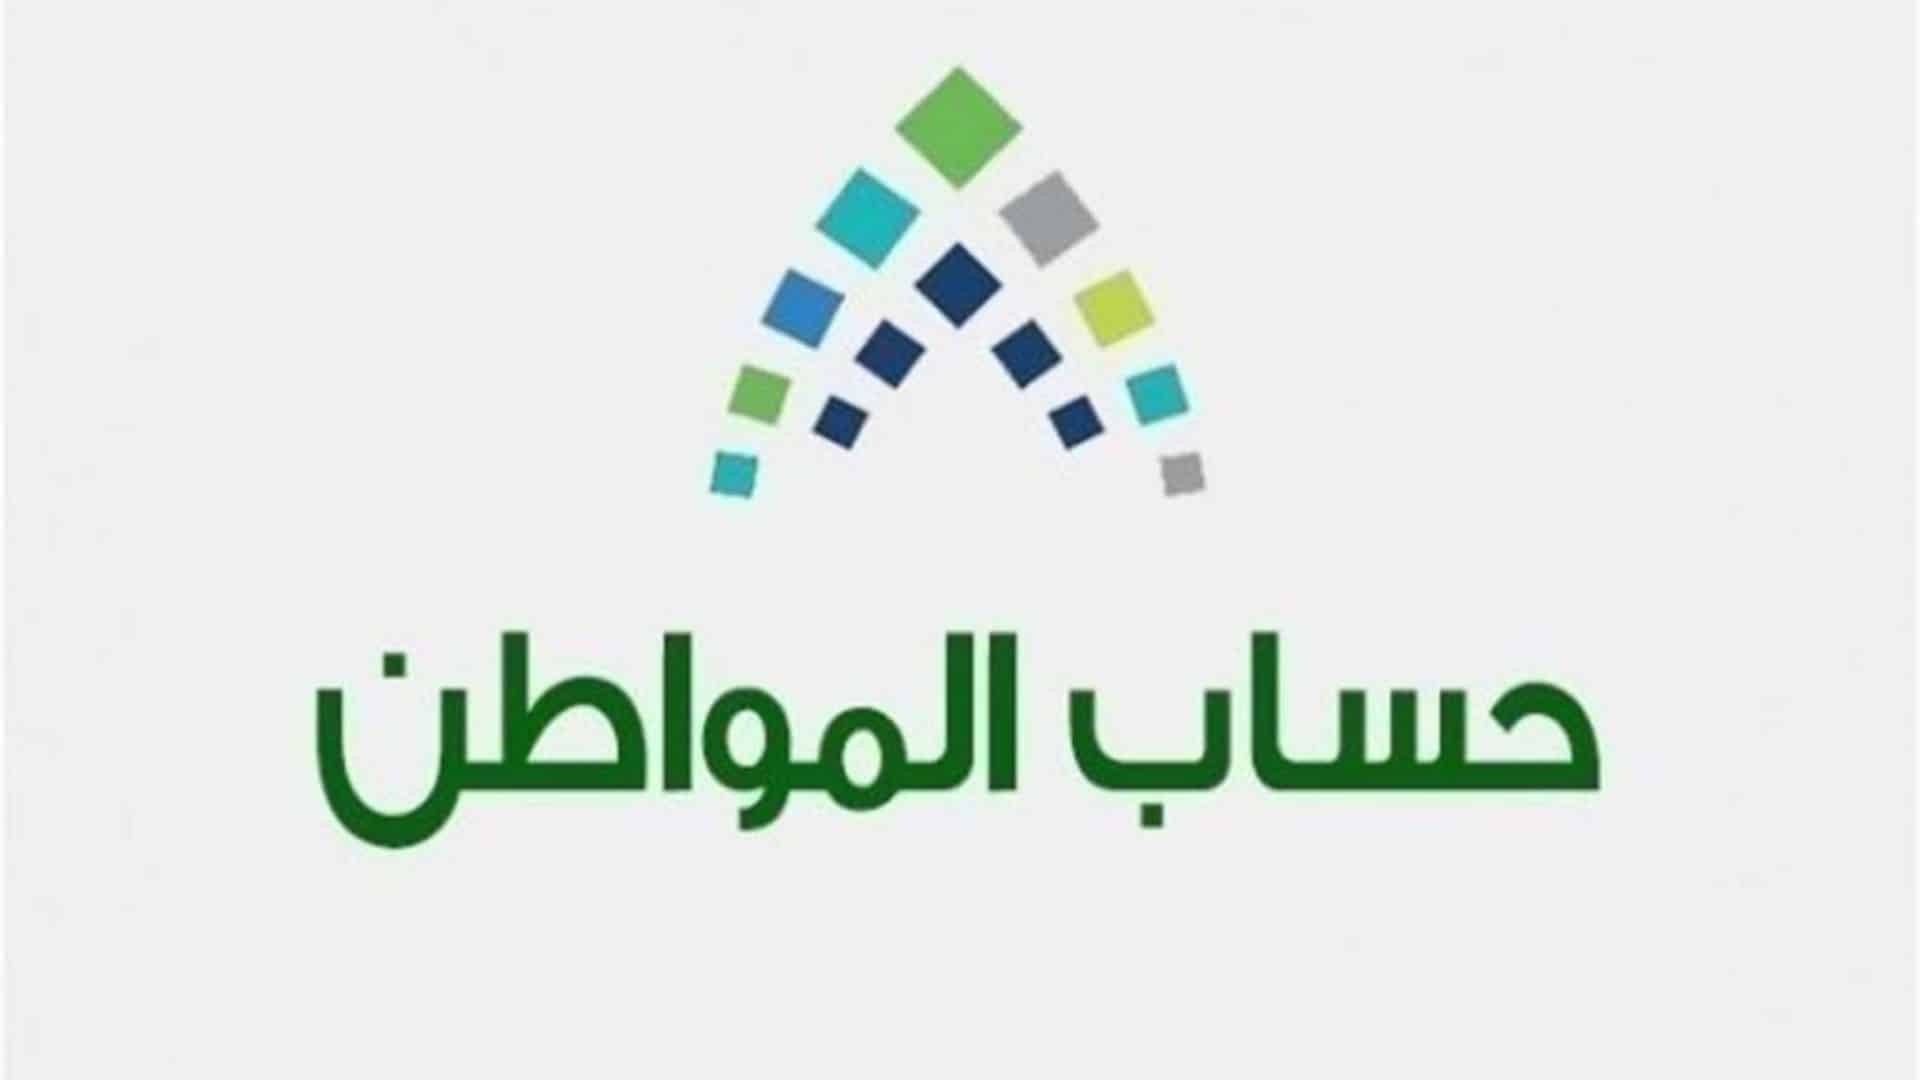 الاستعلام عن نتائج أهلية للدفعة 38 برنامج حساب المواطن برقم الهوية عبر موقع وزارة العمل السعودية